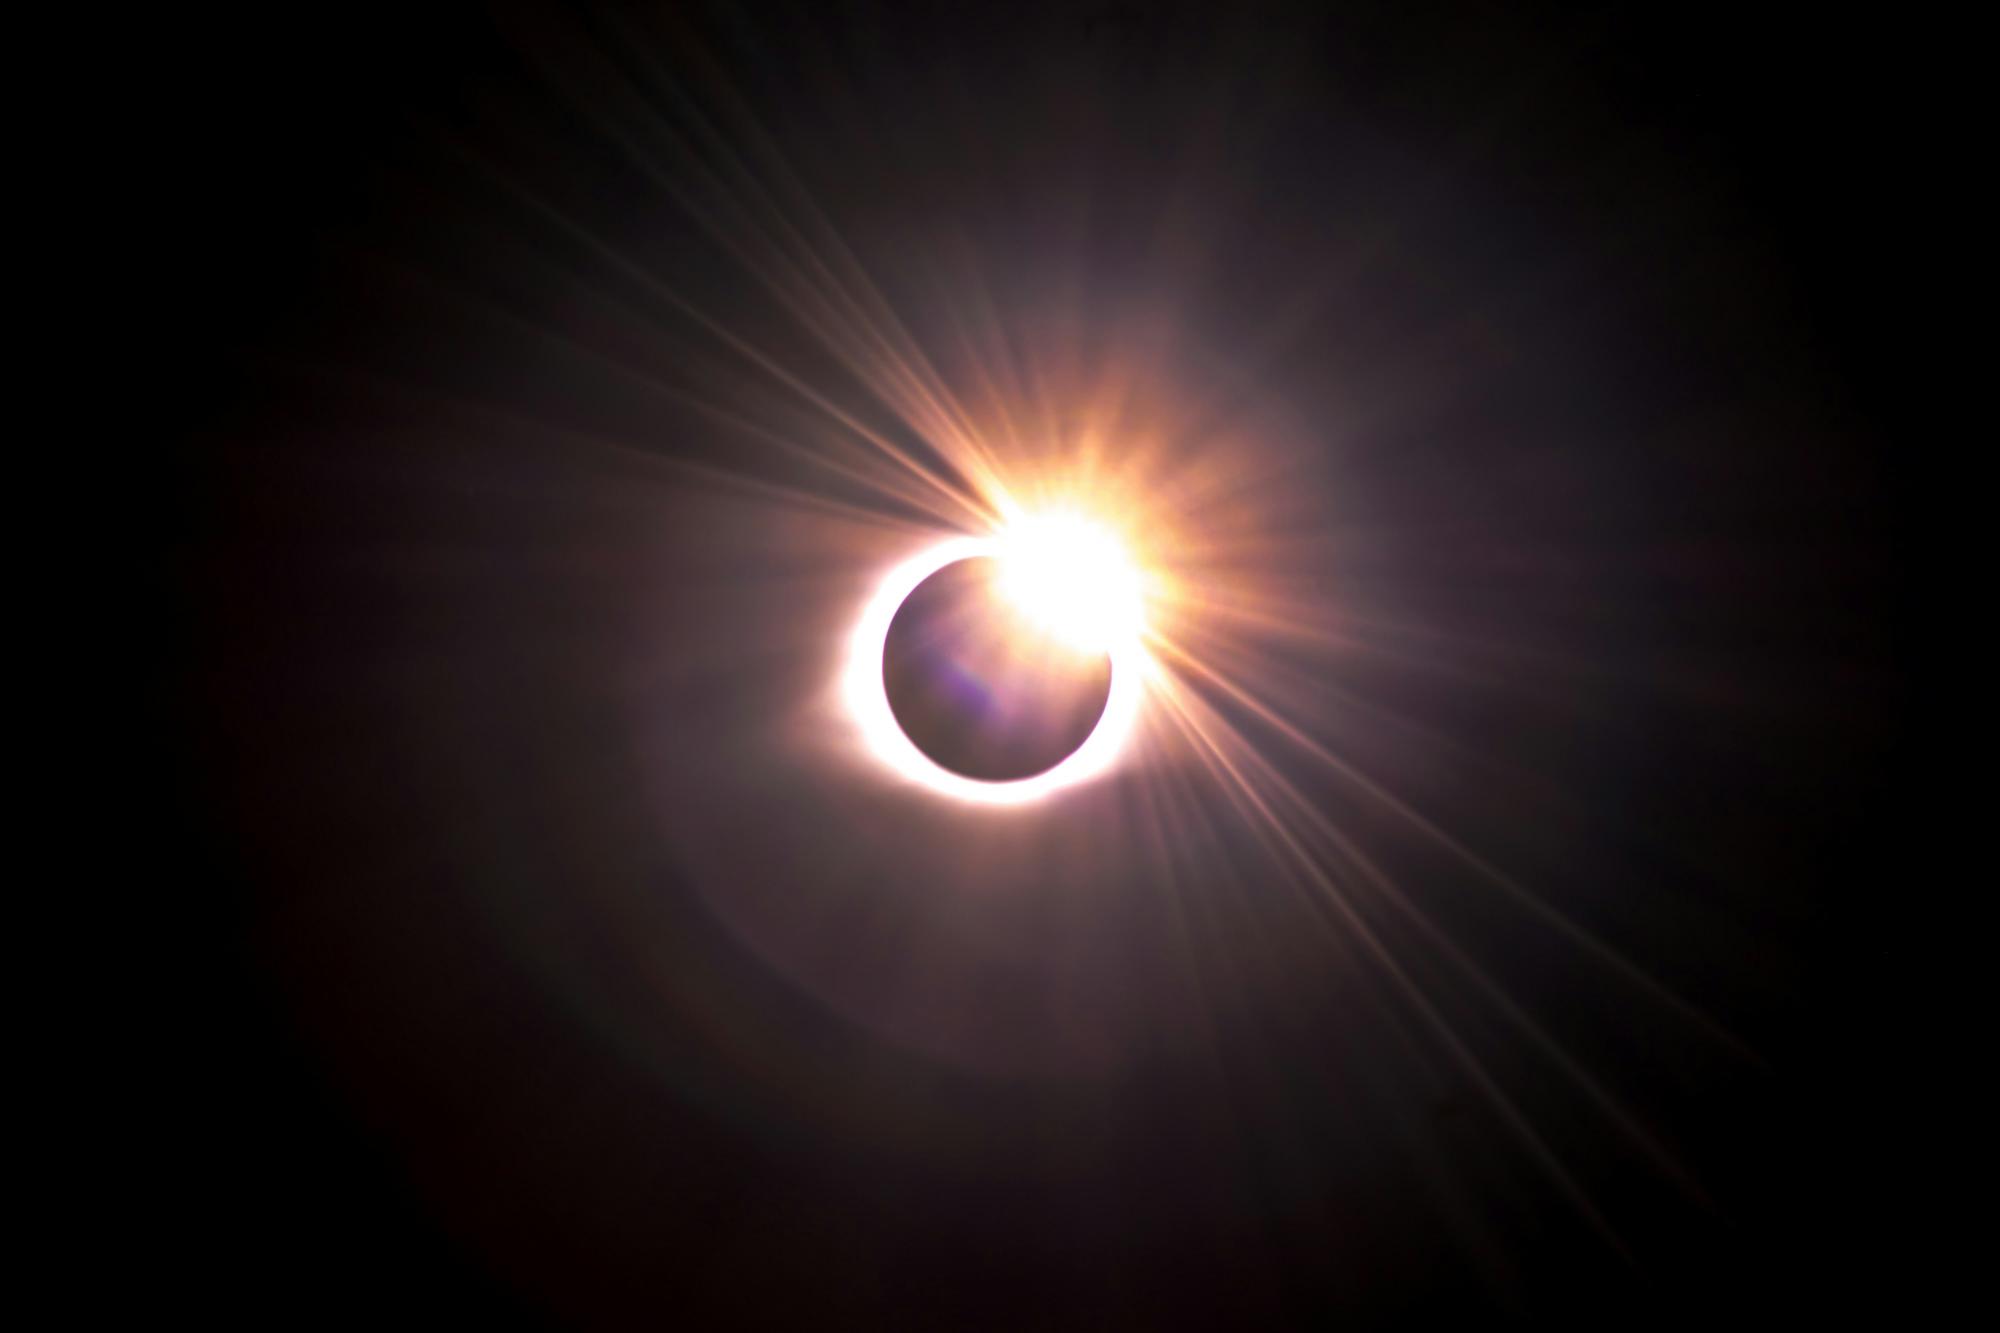 $!Presenciar un eclipse solar total es un evento excepcional que cautiva a millones de personas en todo el mundo.